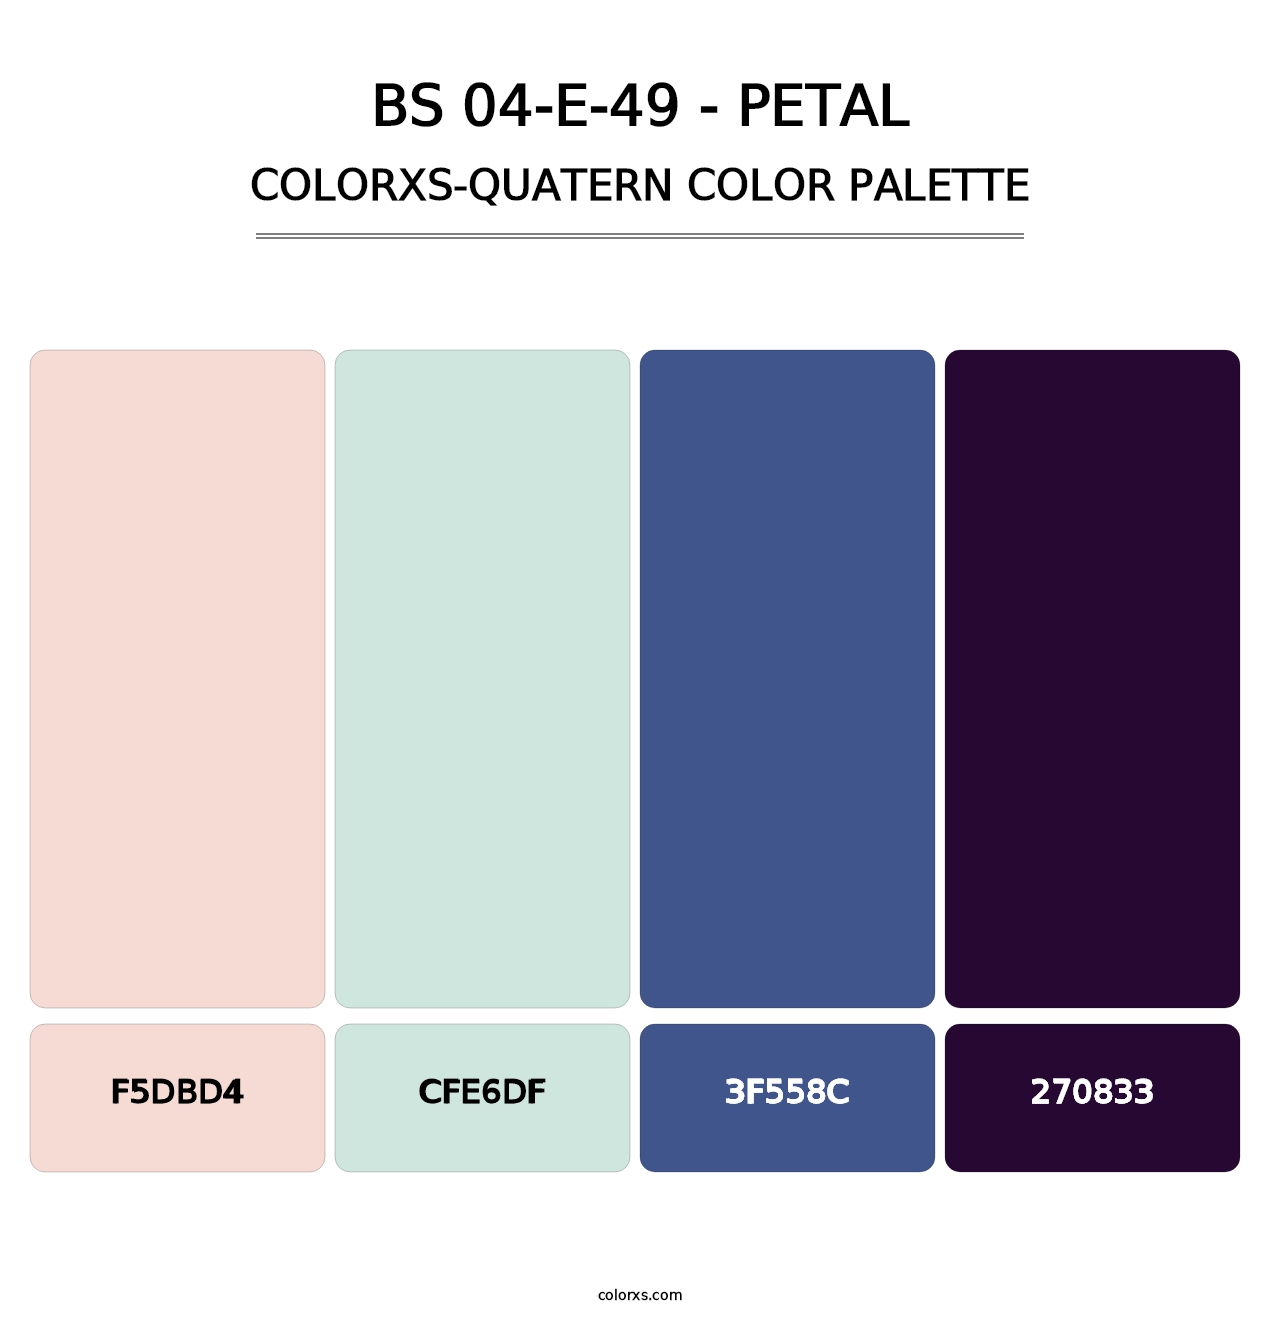 BS 04-E-49 - Petal - Colorxs Quatern Palette